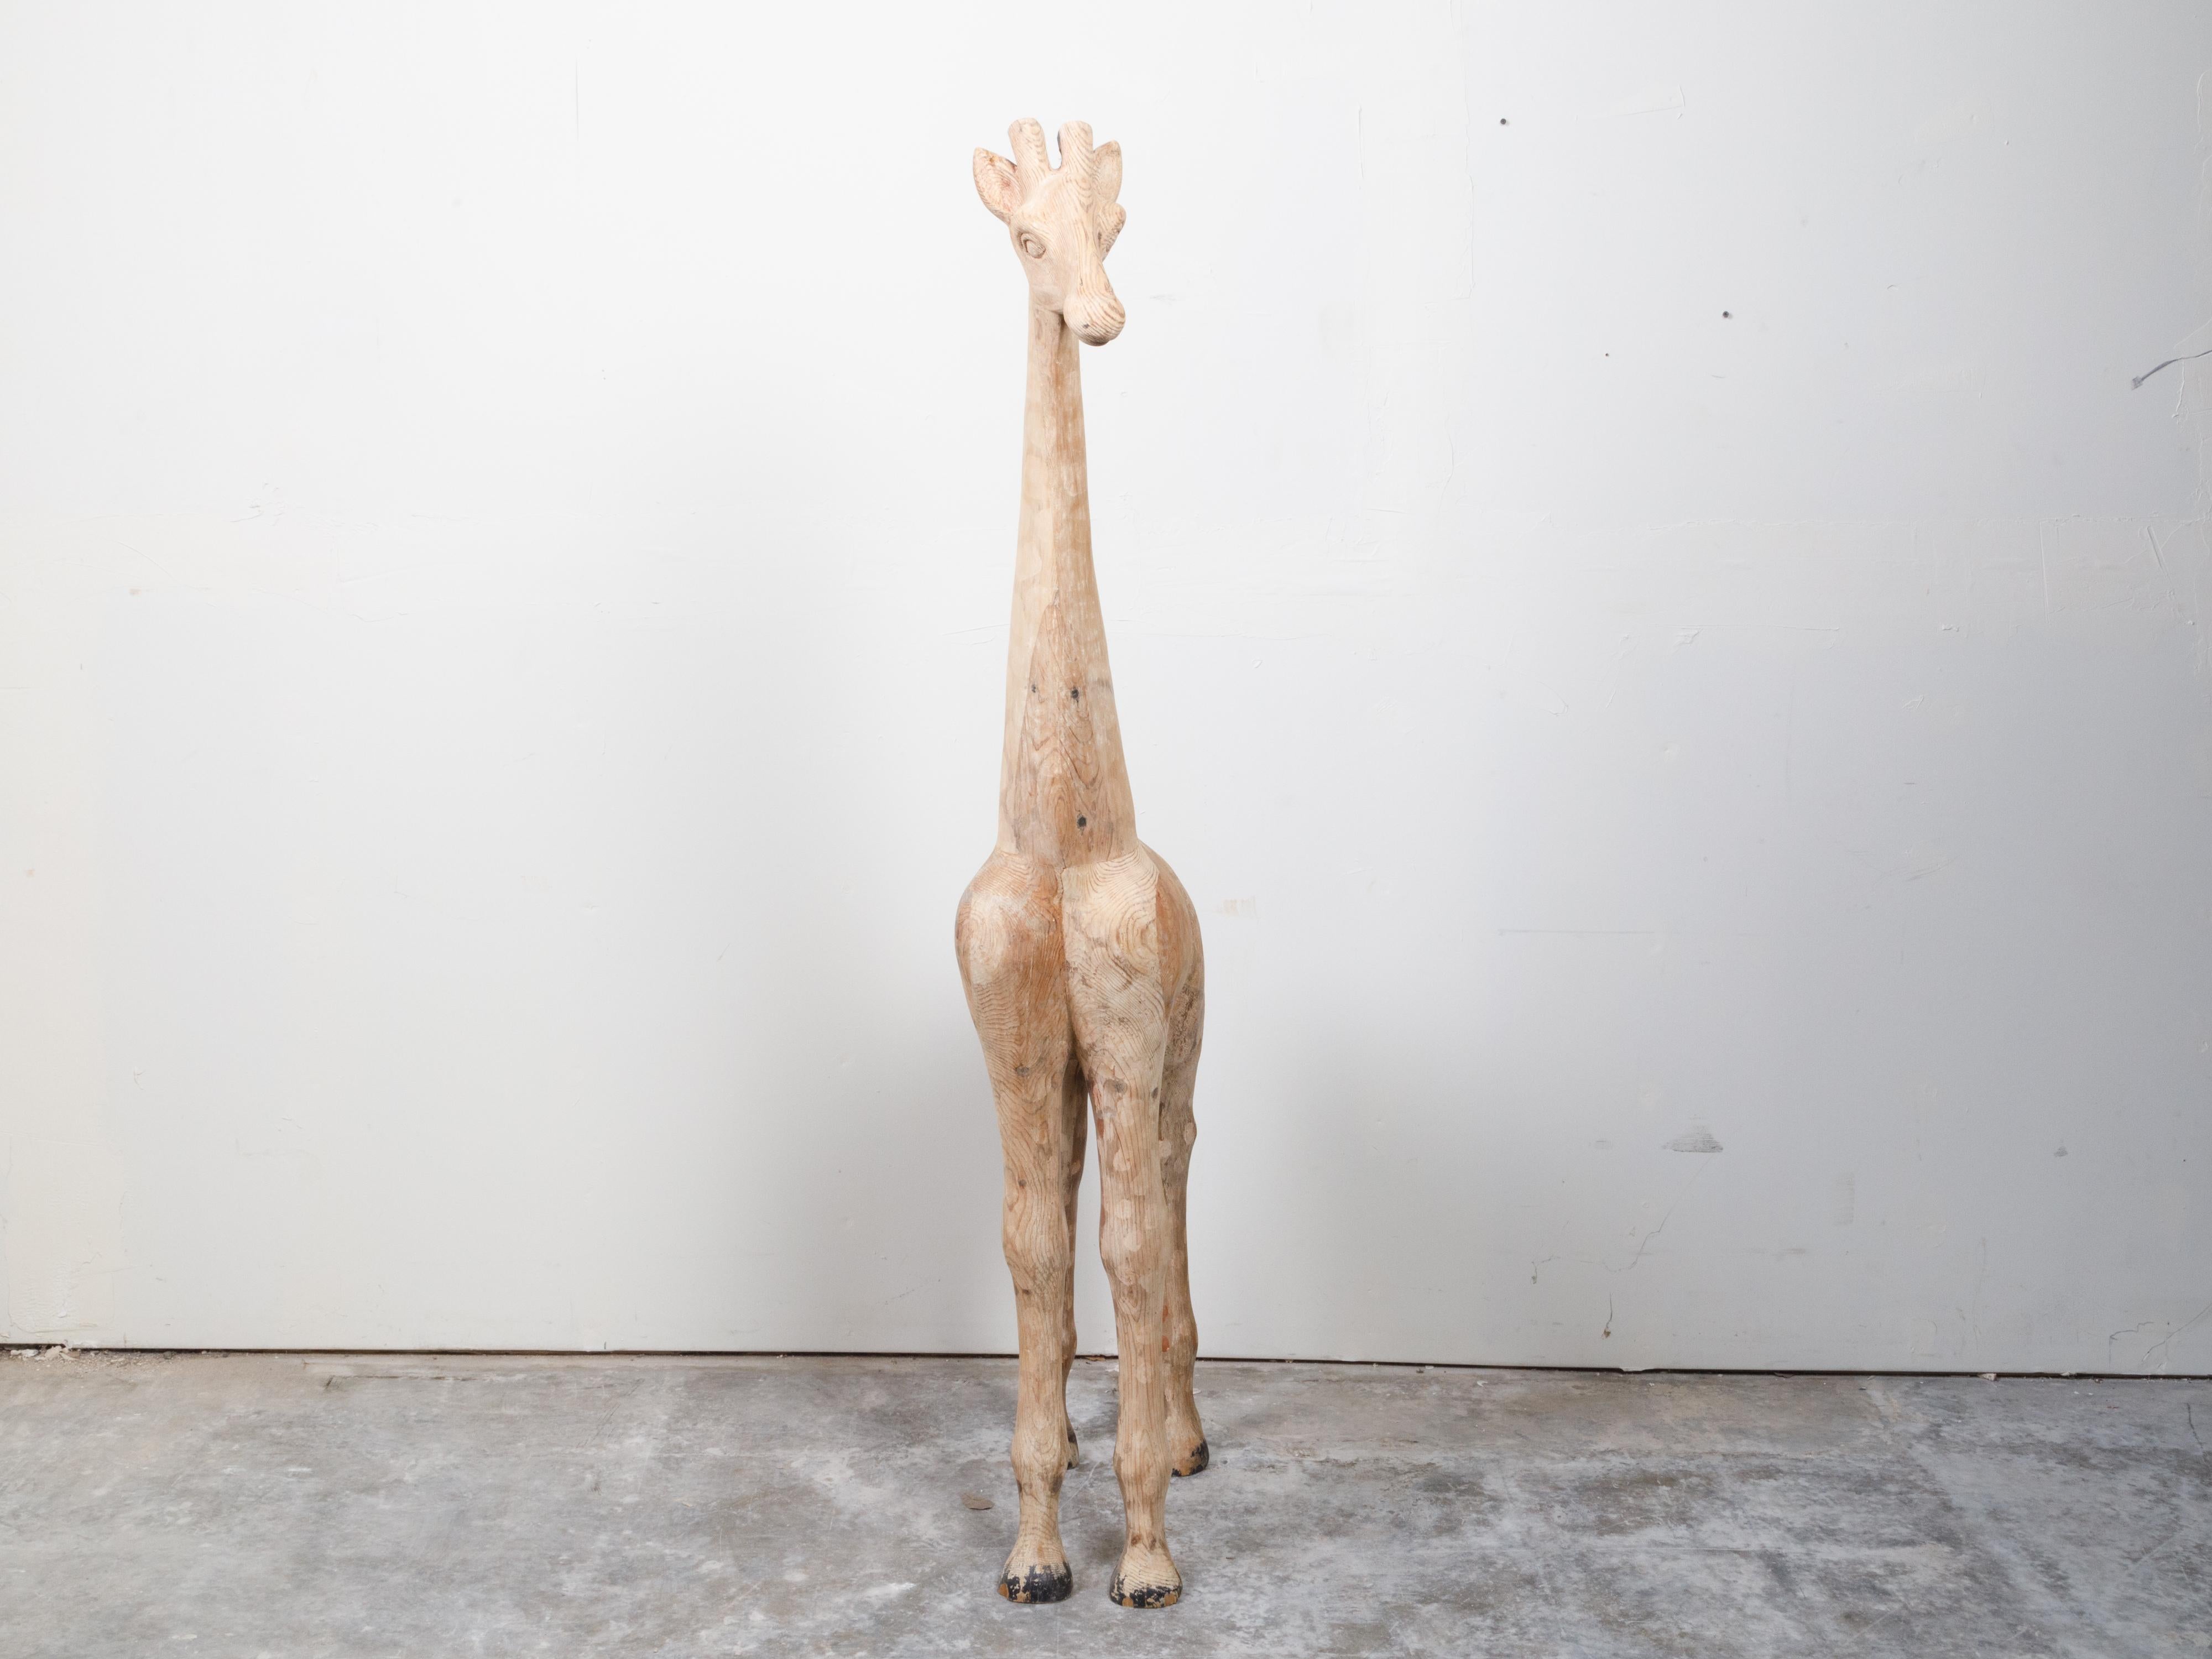 Une sculpture vintage de girafe en bois sculpté américain du milieu du 20e siècle, avec des touches tachetées. Fabriquée aux États-Unis au milieu du siècle dernier, cette sculpture en bois attire l'attention par sa jolie représentation d'une girafe